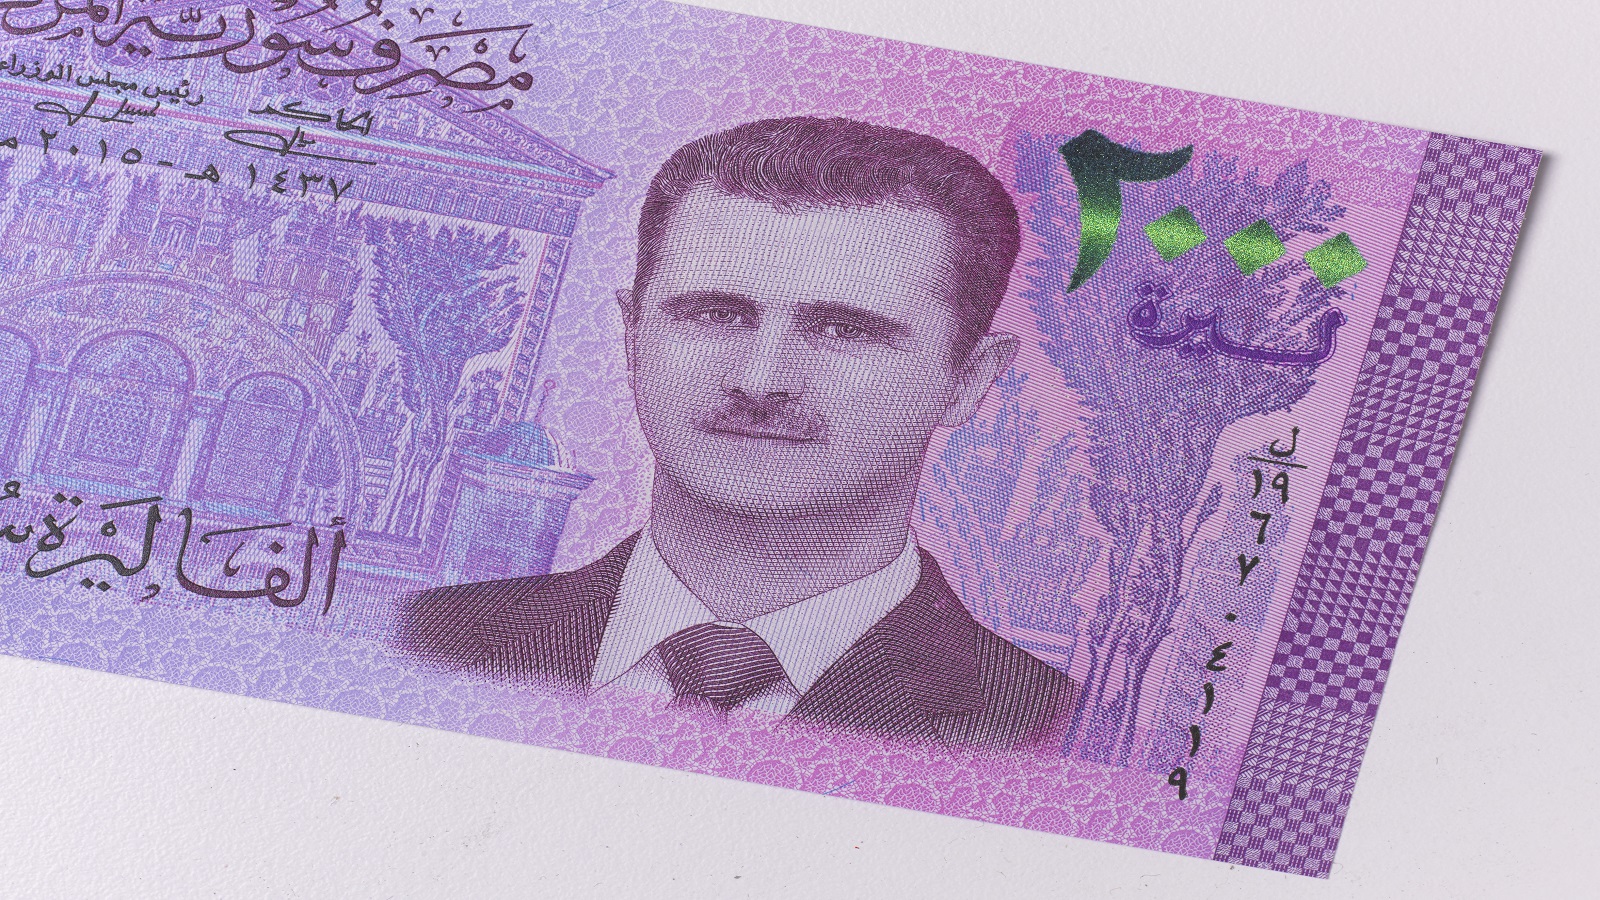 الدولار فوق 3700 ليرة سورية..ركود وفقر